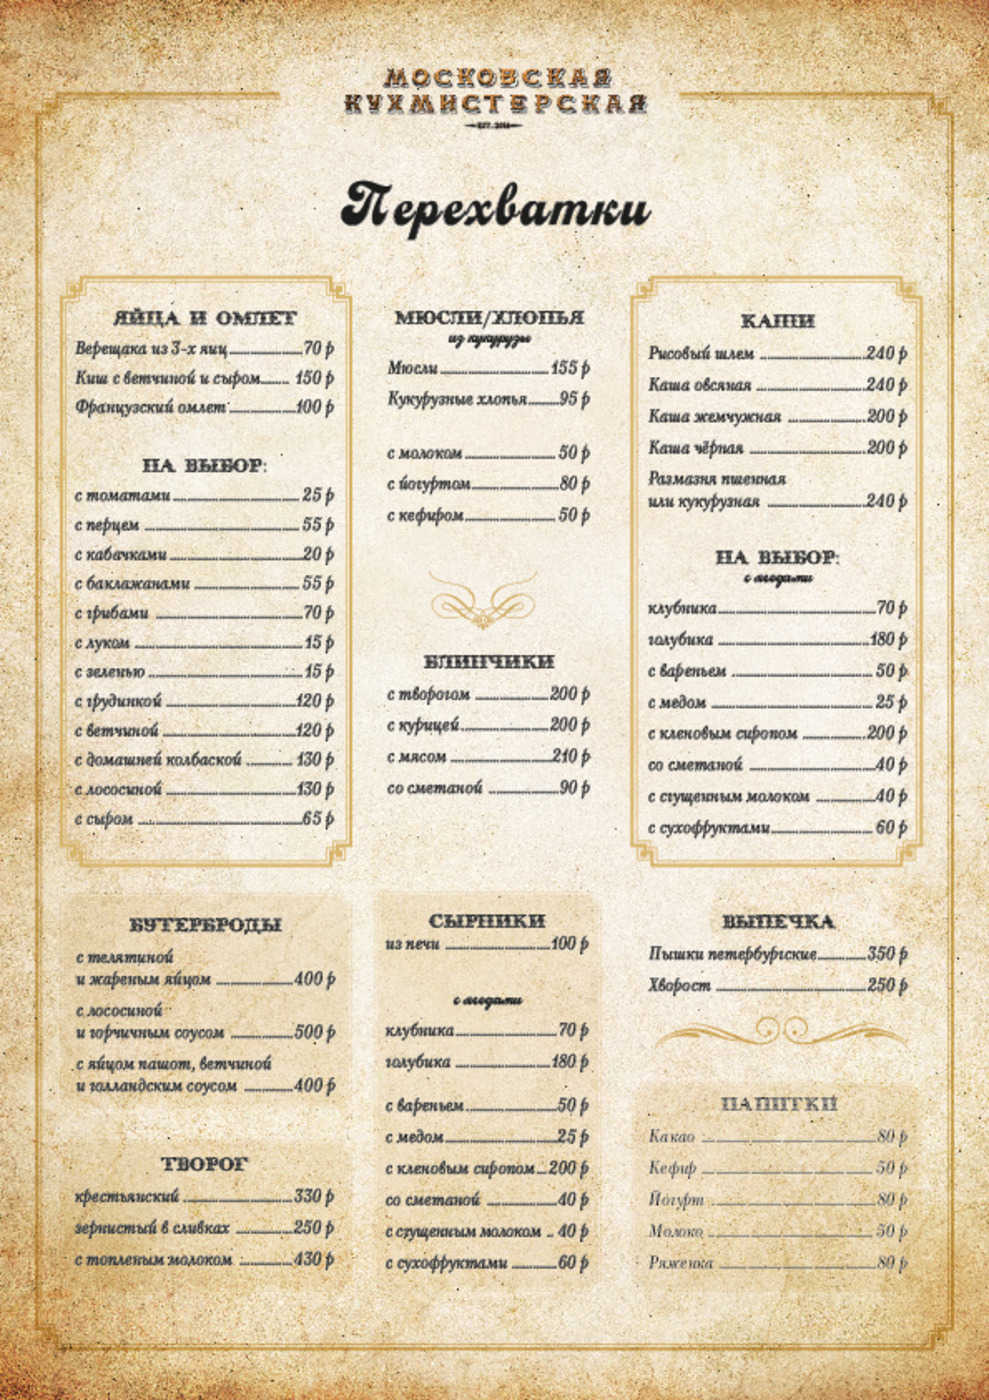 меню самого дорогого ресторана москвы